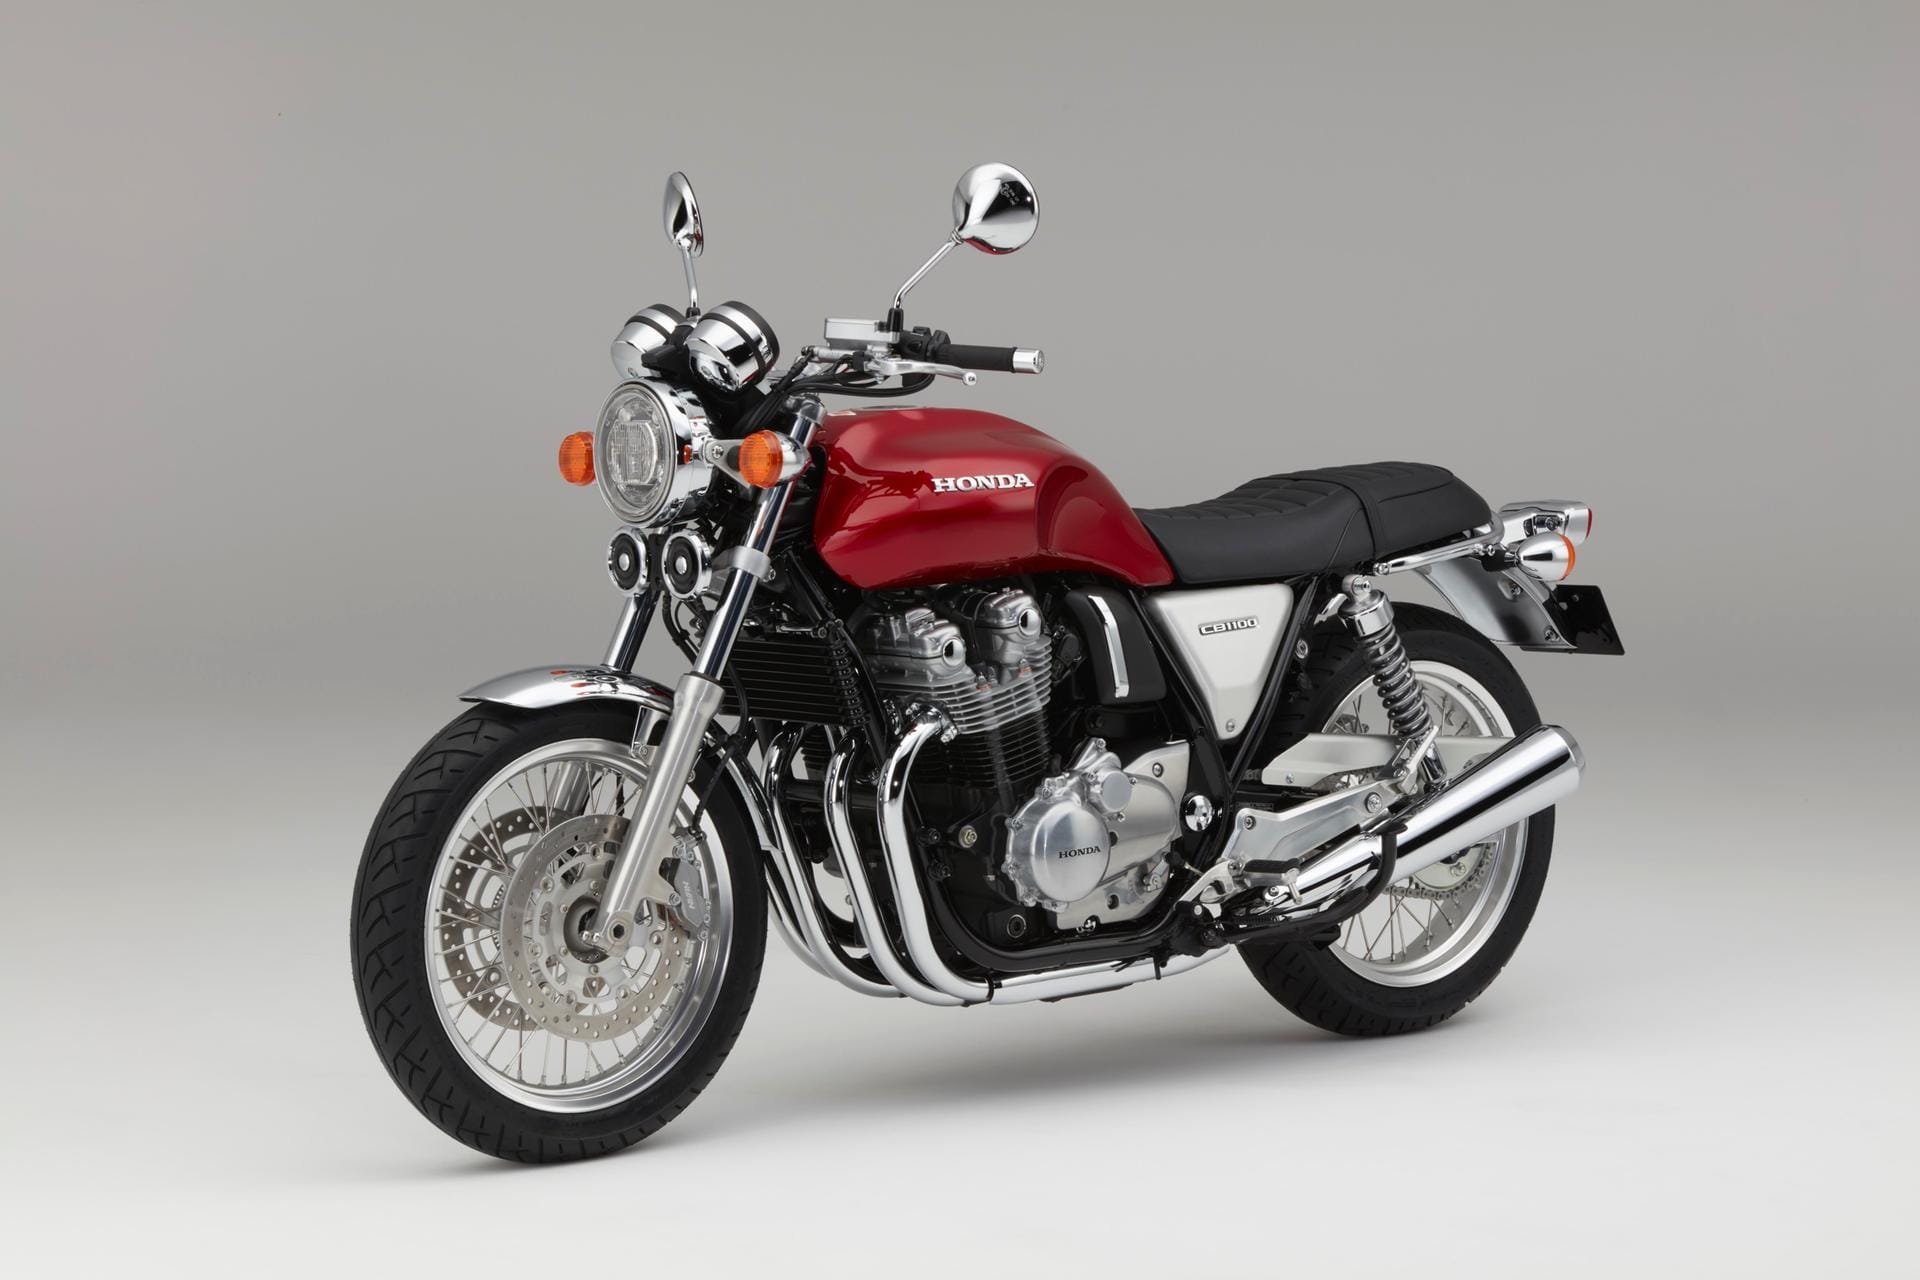 Die überarbeitete Honda CB 1100 EX ist ein hubraumstarkes Motorrad im Retro-Stil mit luftgekühltem Vierzylinder-Reihenmotor.